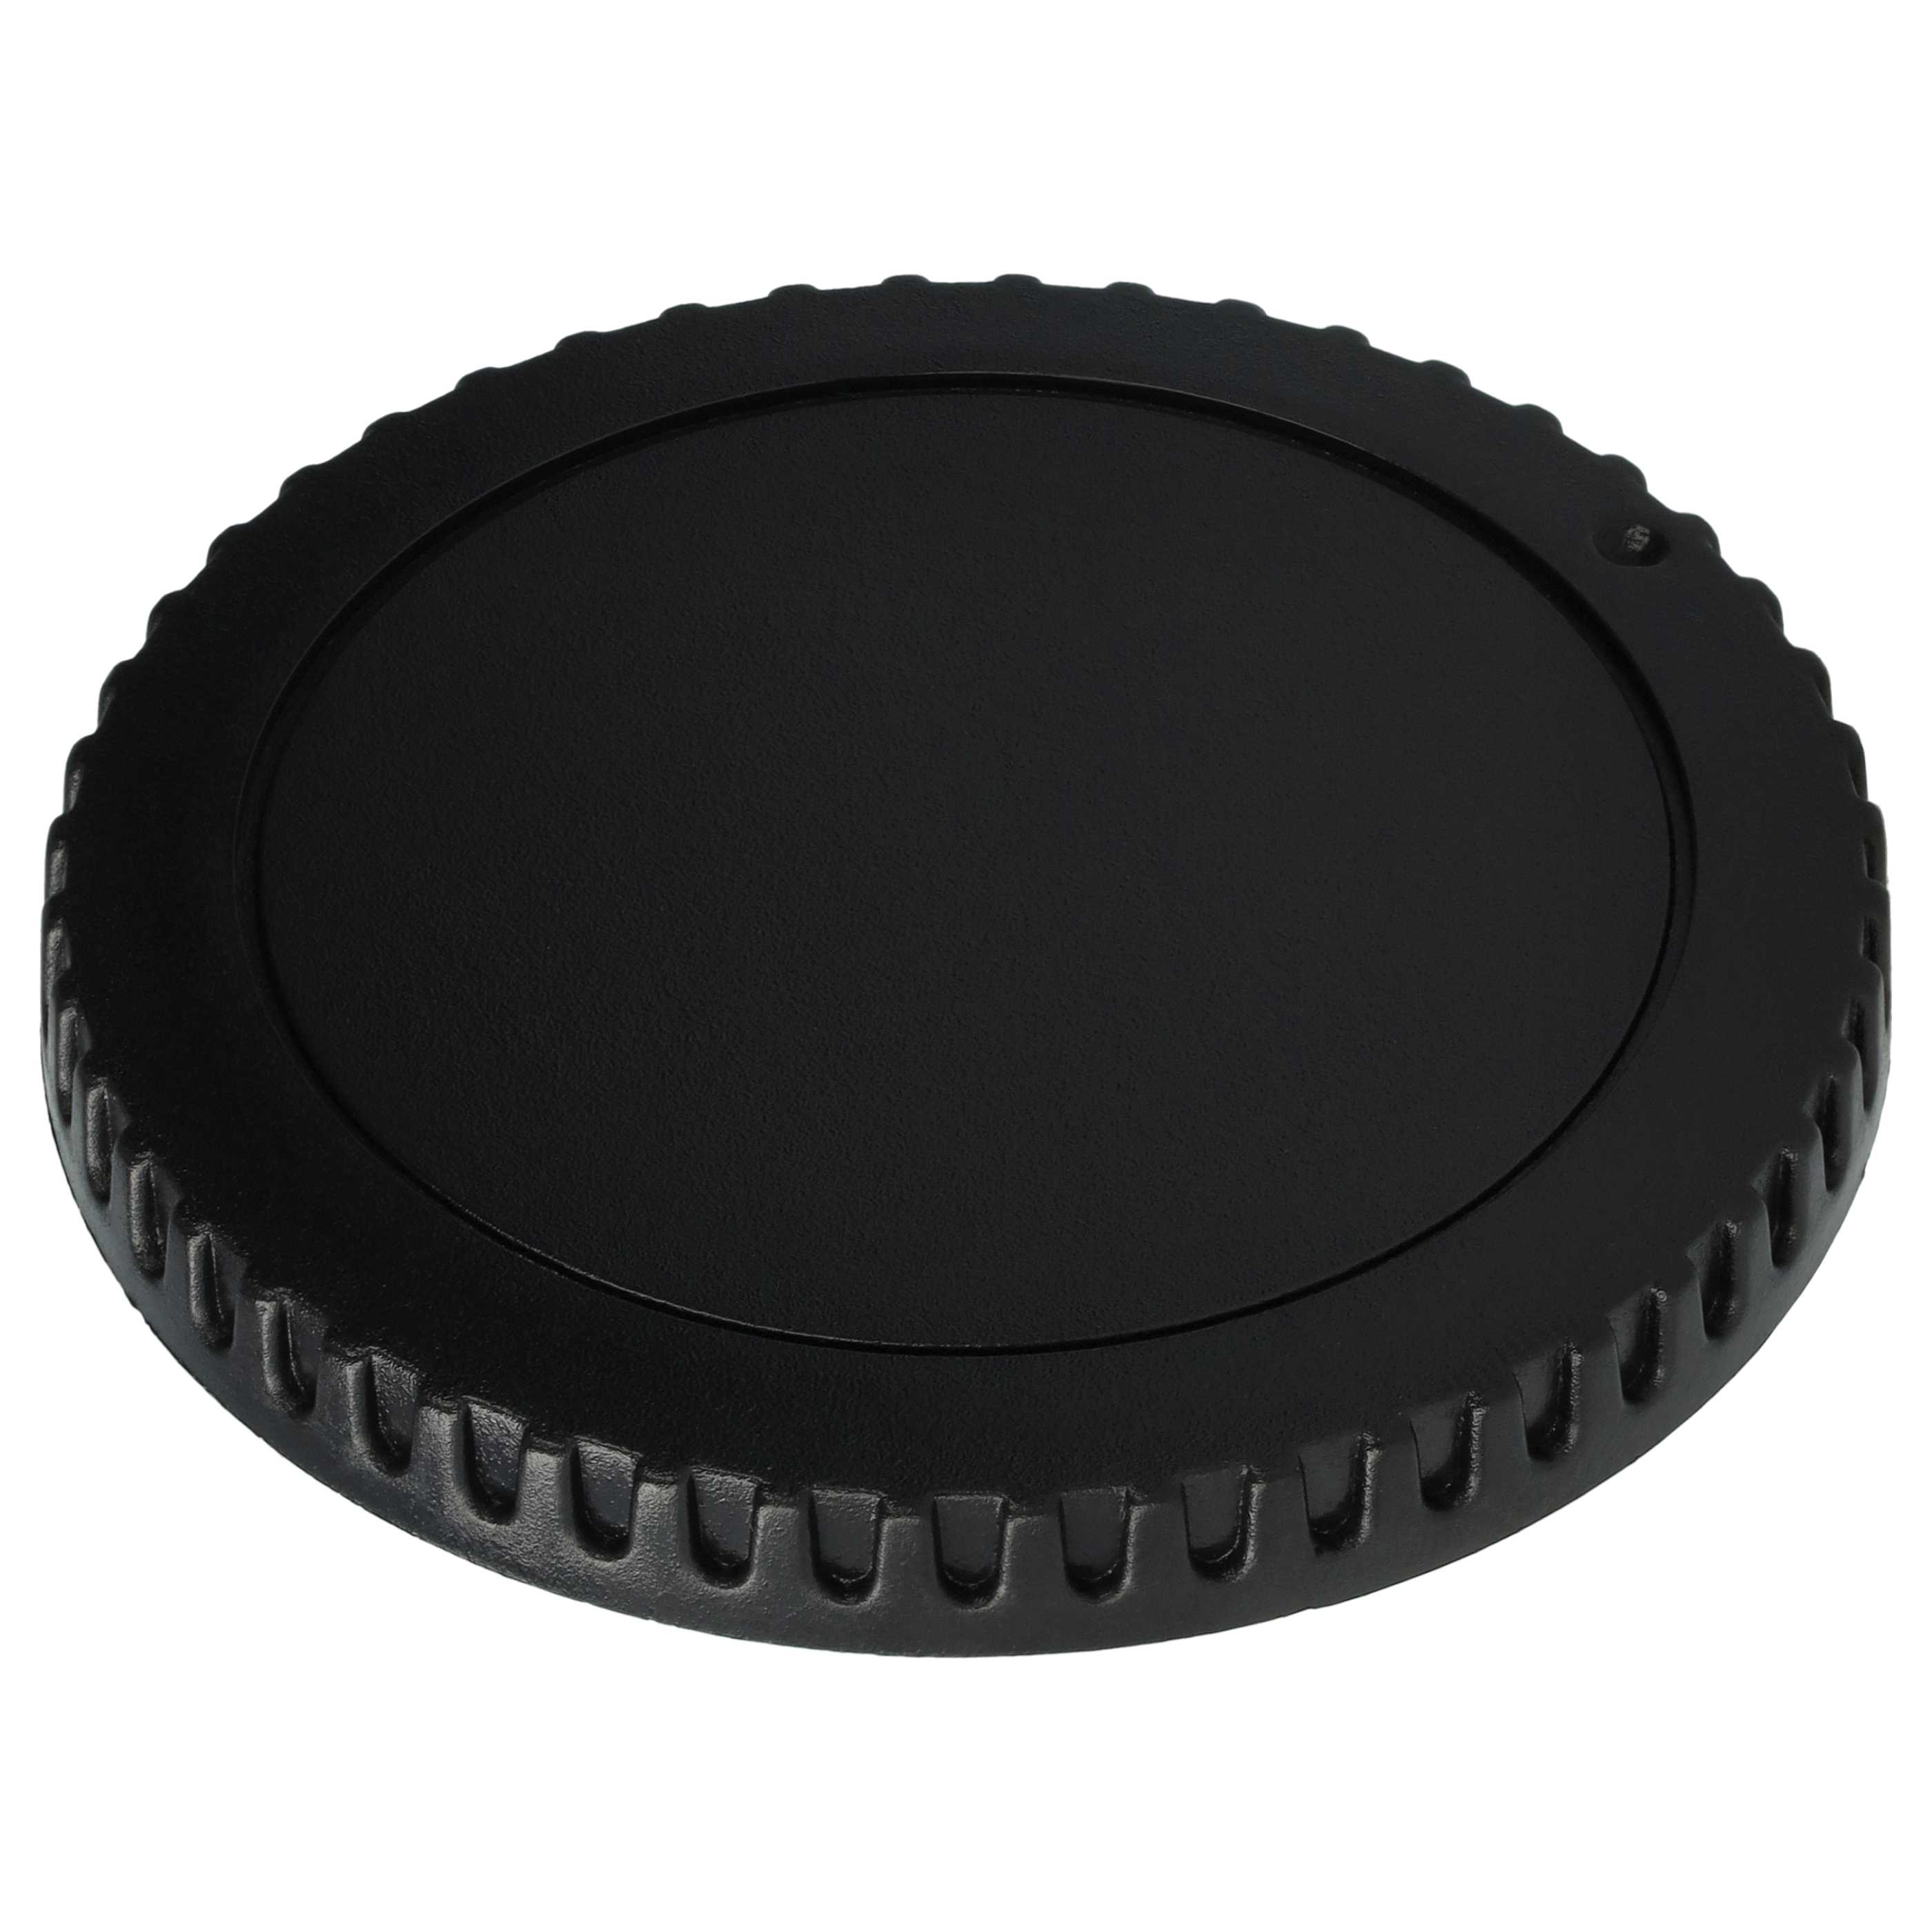 Housing Cap suitable for Canon EOS 450D Camera, DSLR - Plastic, Black